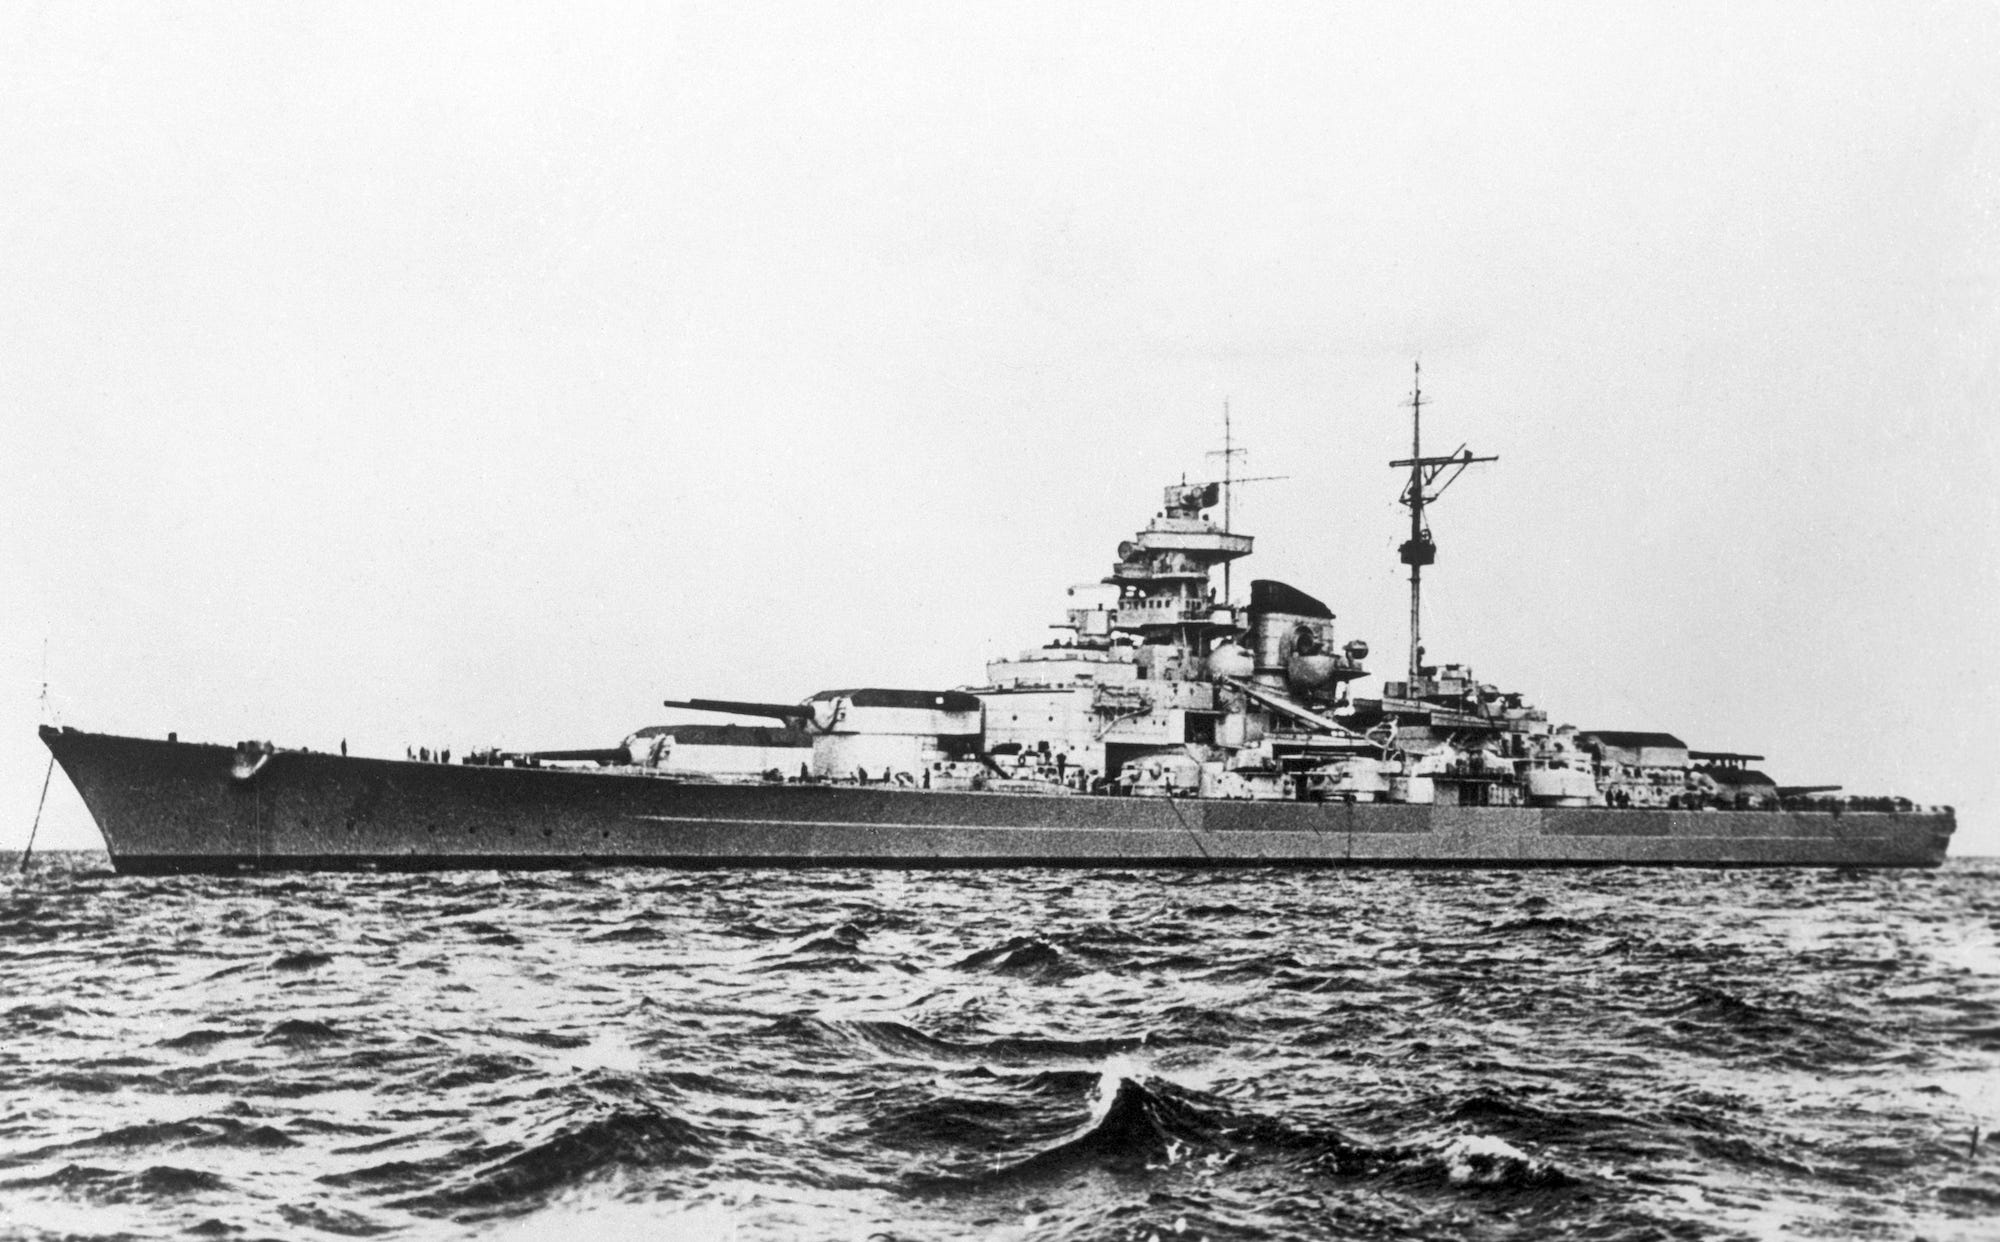 German battleship Tirpitz during World War II